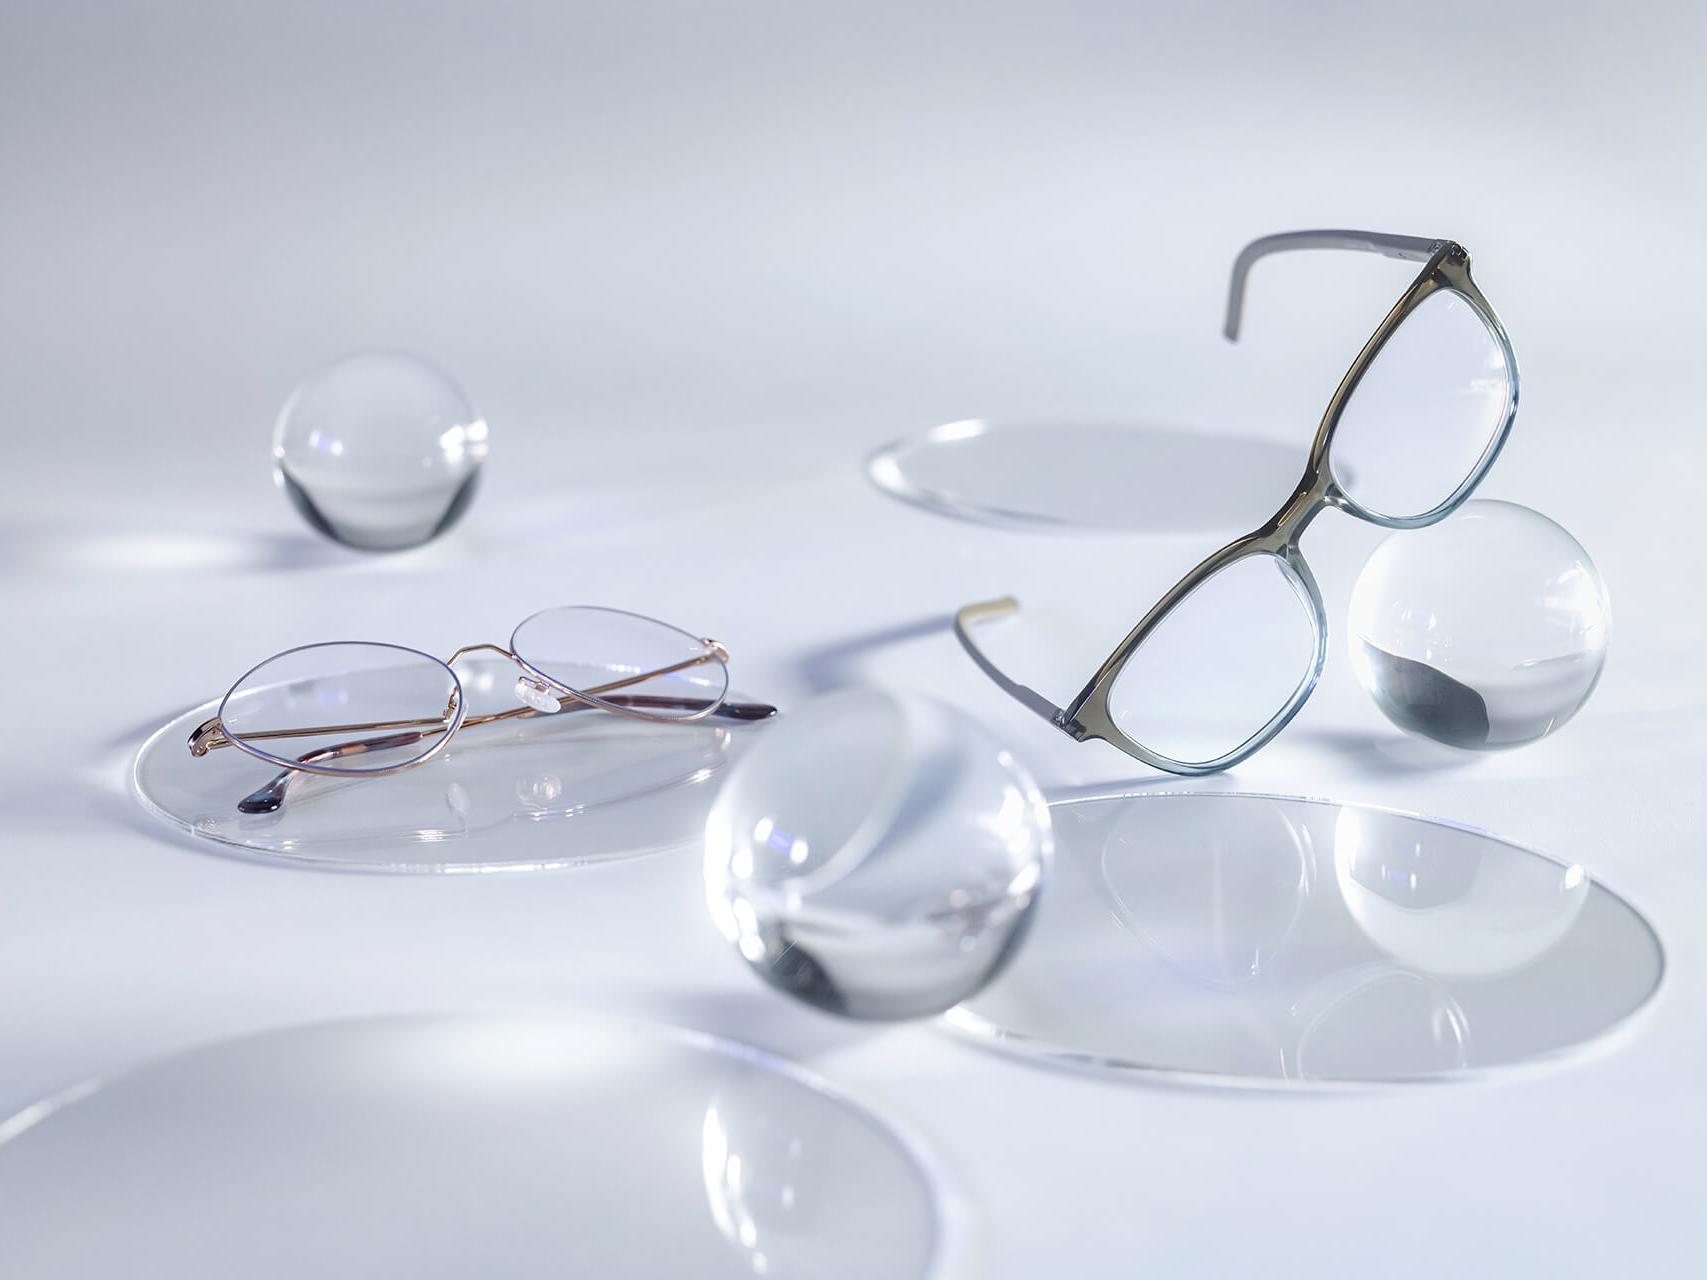 Occhiali con lenti ZEISS dotate di trattamento DuraVision® Silver e prive di riflessi rispetto alle sfere in vetro circostanti.